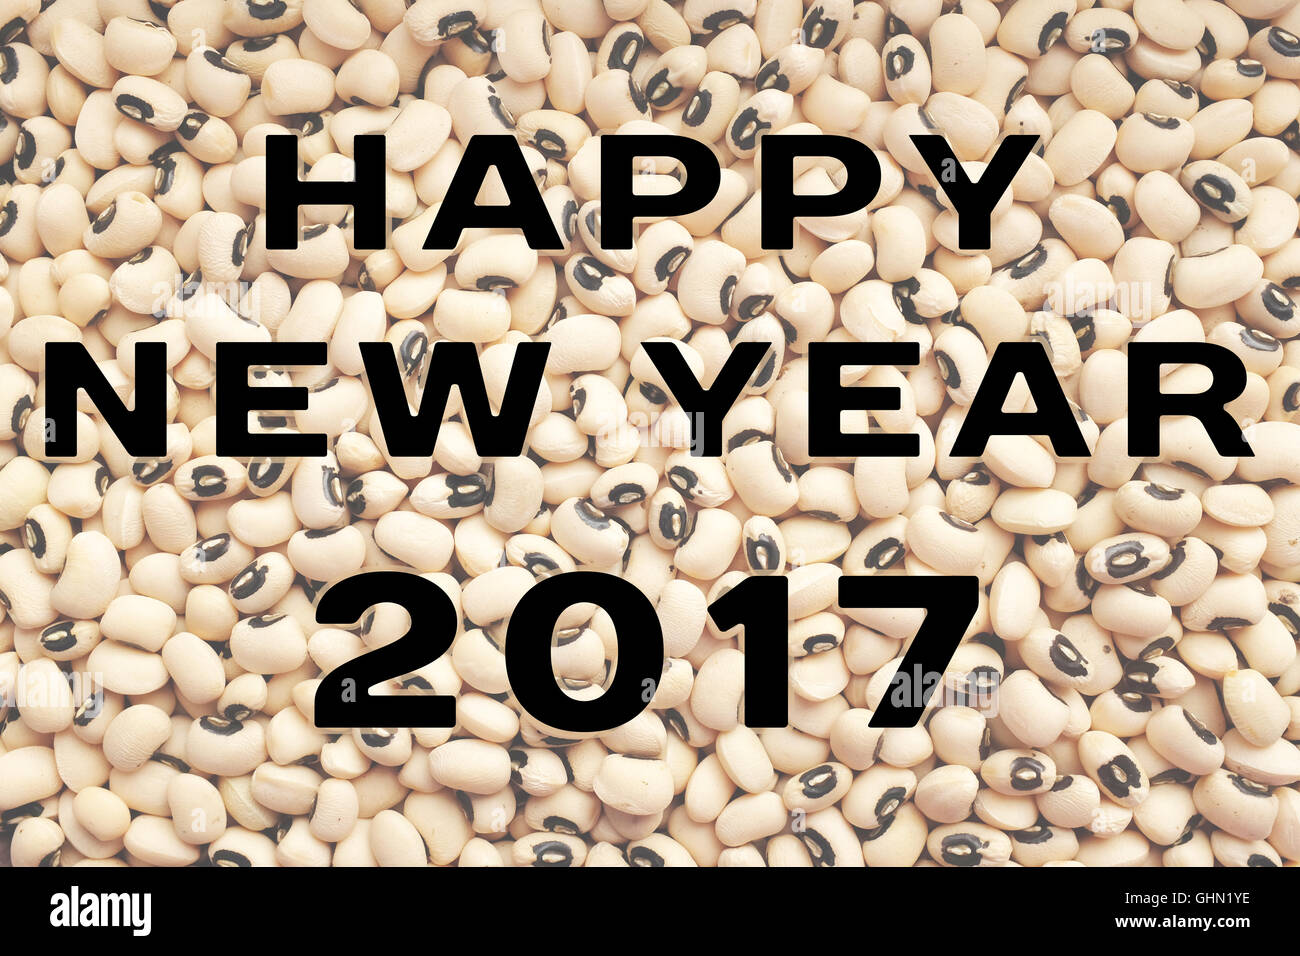 Felice anno nuovo 2017 testo scritto su un essiccato black eyed fagioli sfondo, cibo considerato per portare fortuna Foto Stock